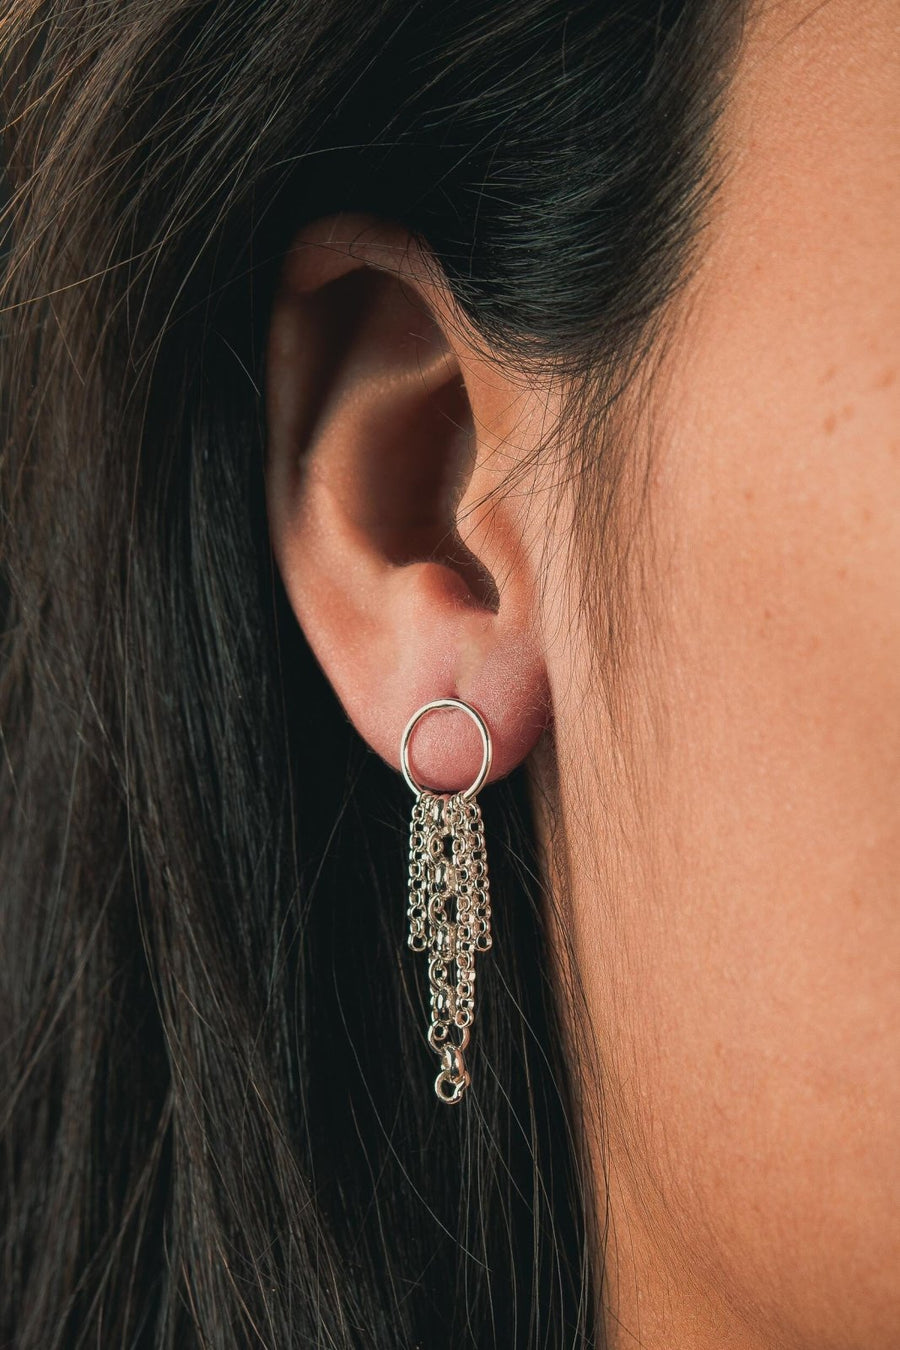 Lumi Chain Tassel Earrings - Melanie Golden Jewelry - _badge_new, dangle earrings, earrings, new, stud, stud earrings